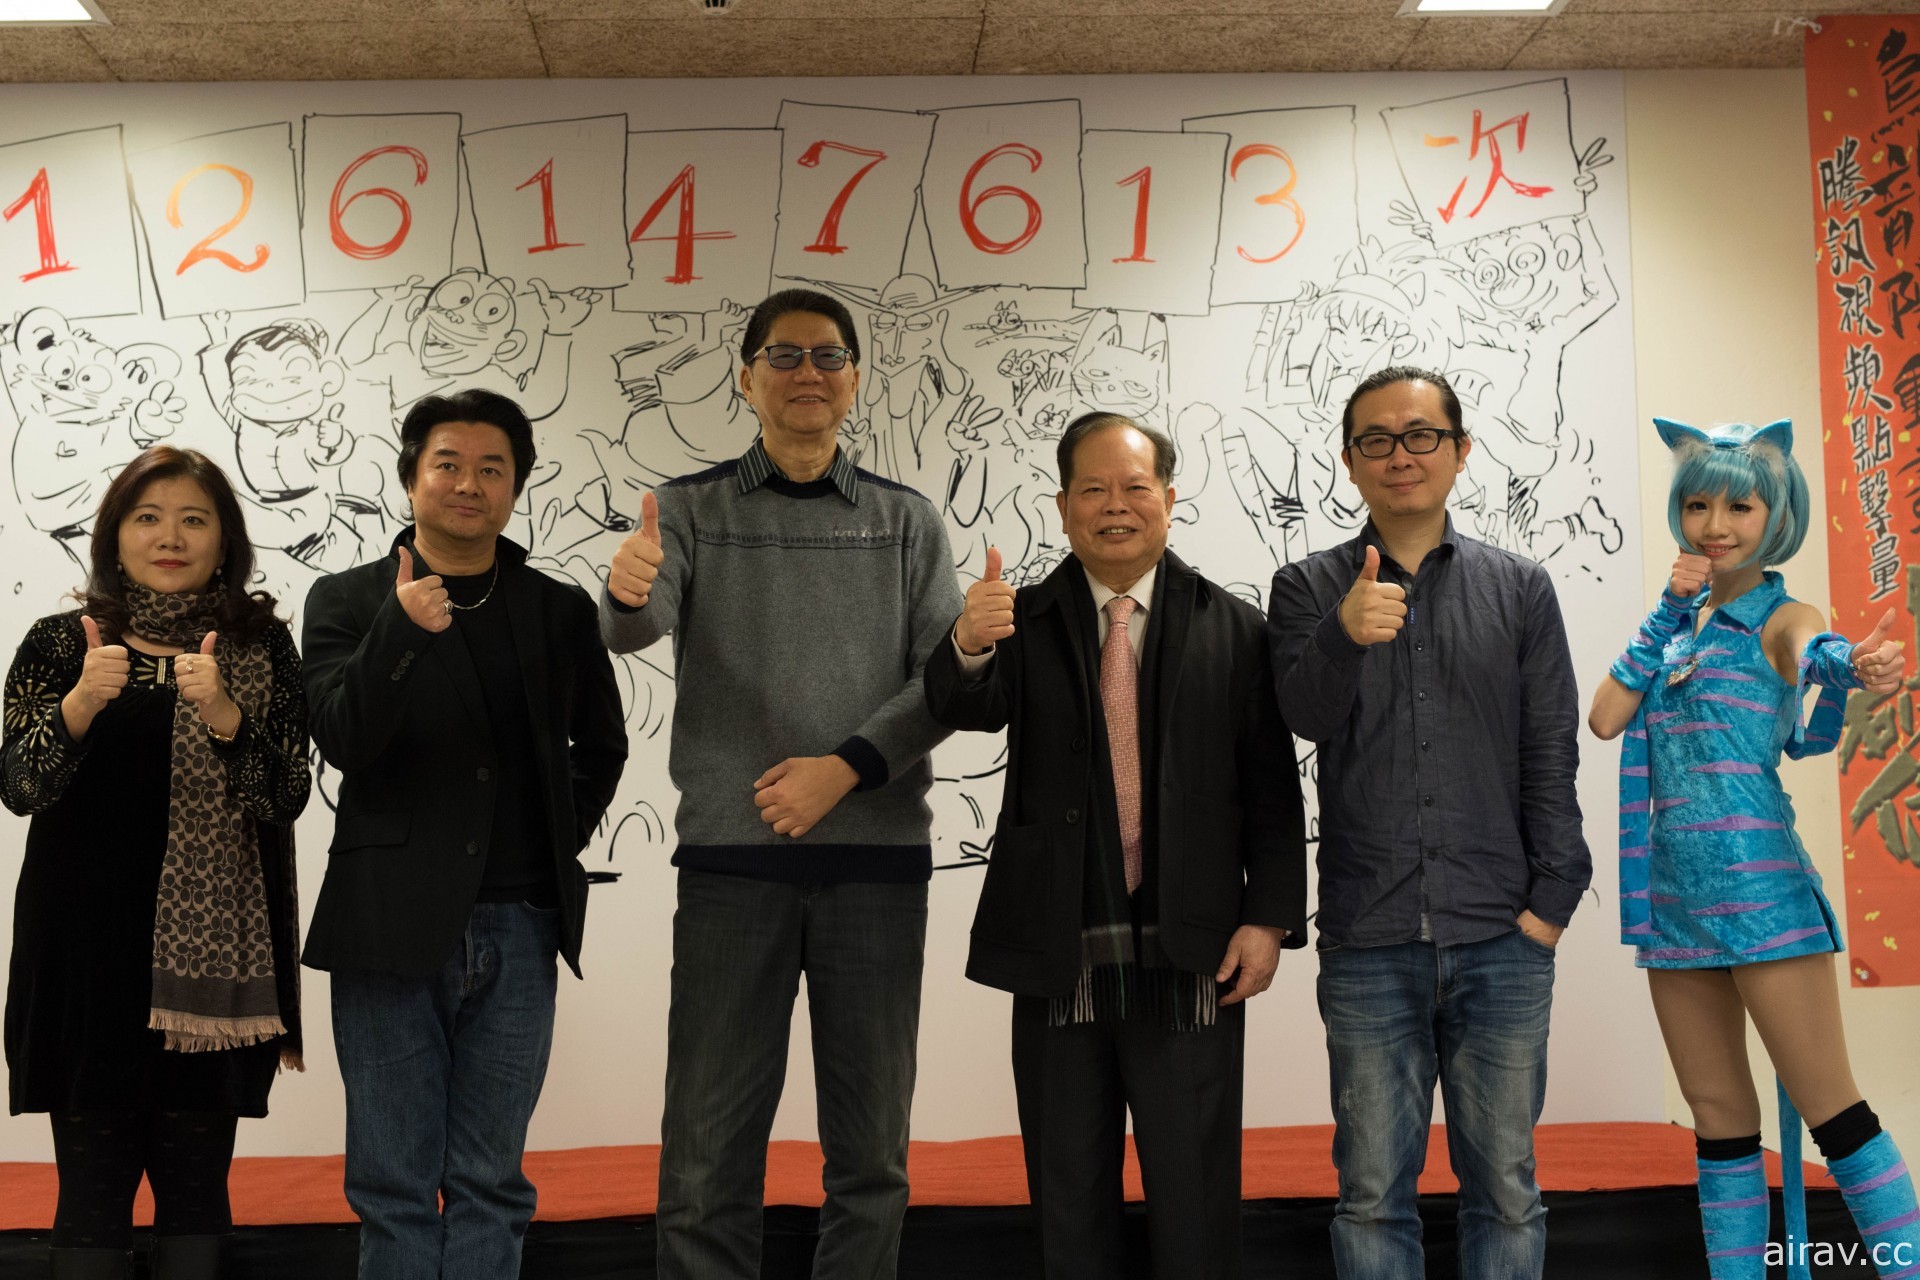 漫畫家敖幼祥宣布成立「烏龍院動漫獎學金」每年提供百萬獎金資助台灣動漫產業